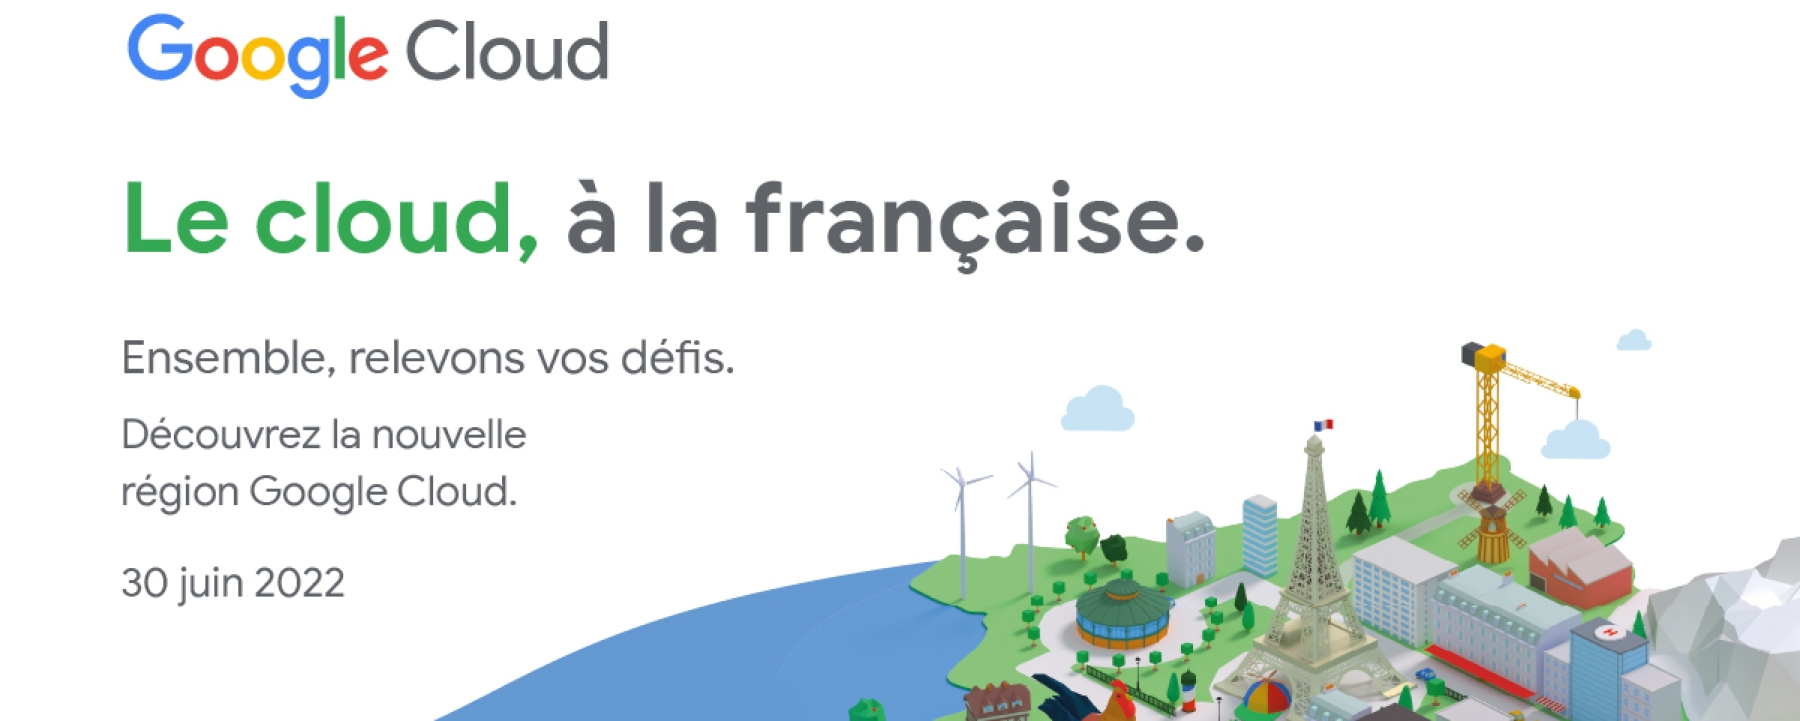 Le cloud, à la française.  Ensemble, relevons vos défis.